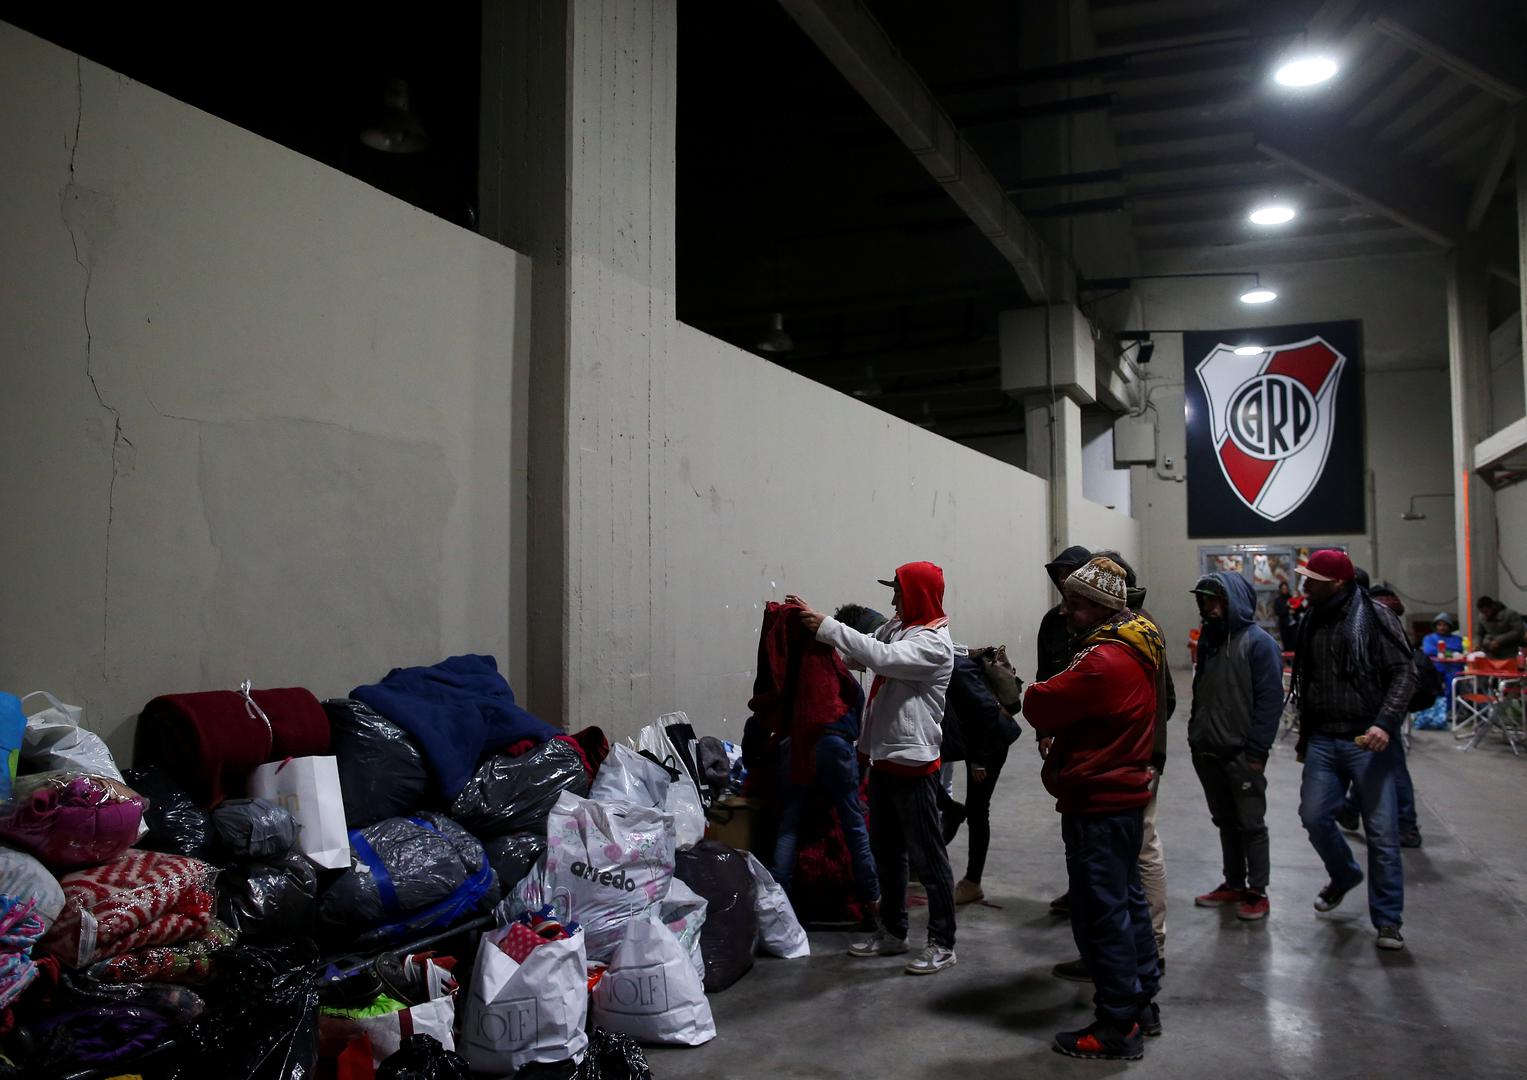 Slavni argentinski nogometni klub River Plate otvorio je u srijedu vrata svog stadiona Monumentala kako bi s ulica sklonio beskućnike tijekom niskih temperatura.